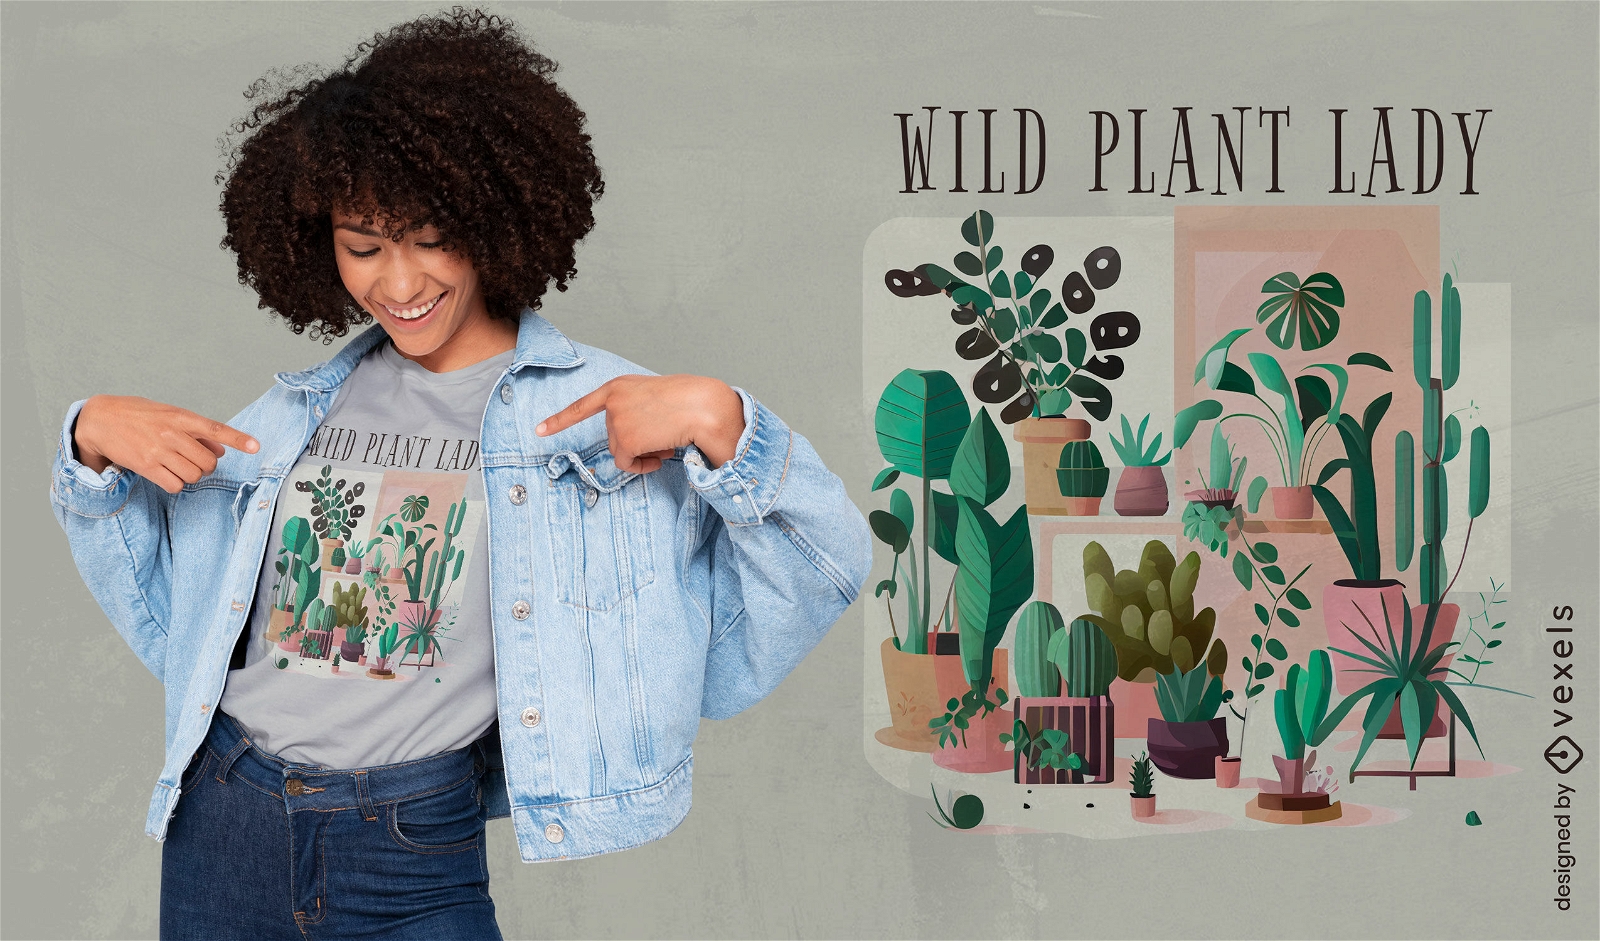 Botanical wild plant lady t-shirt design